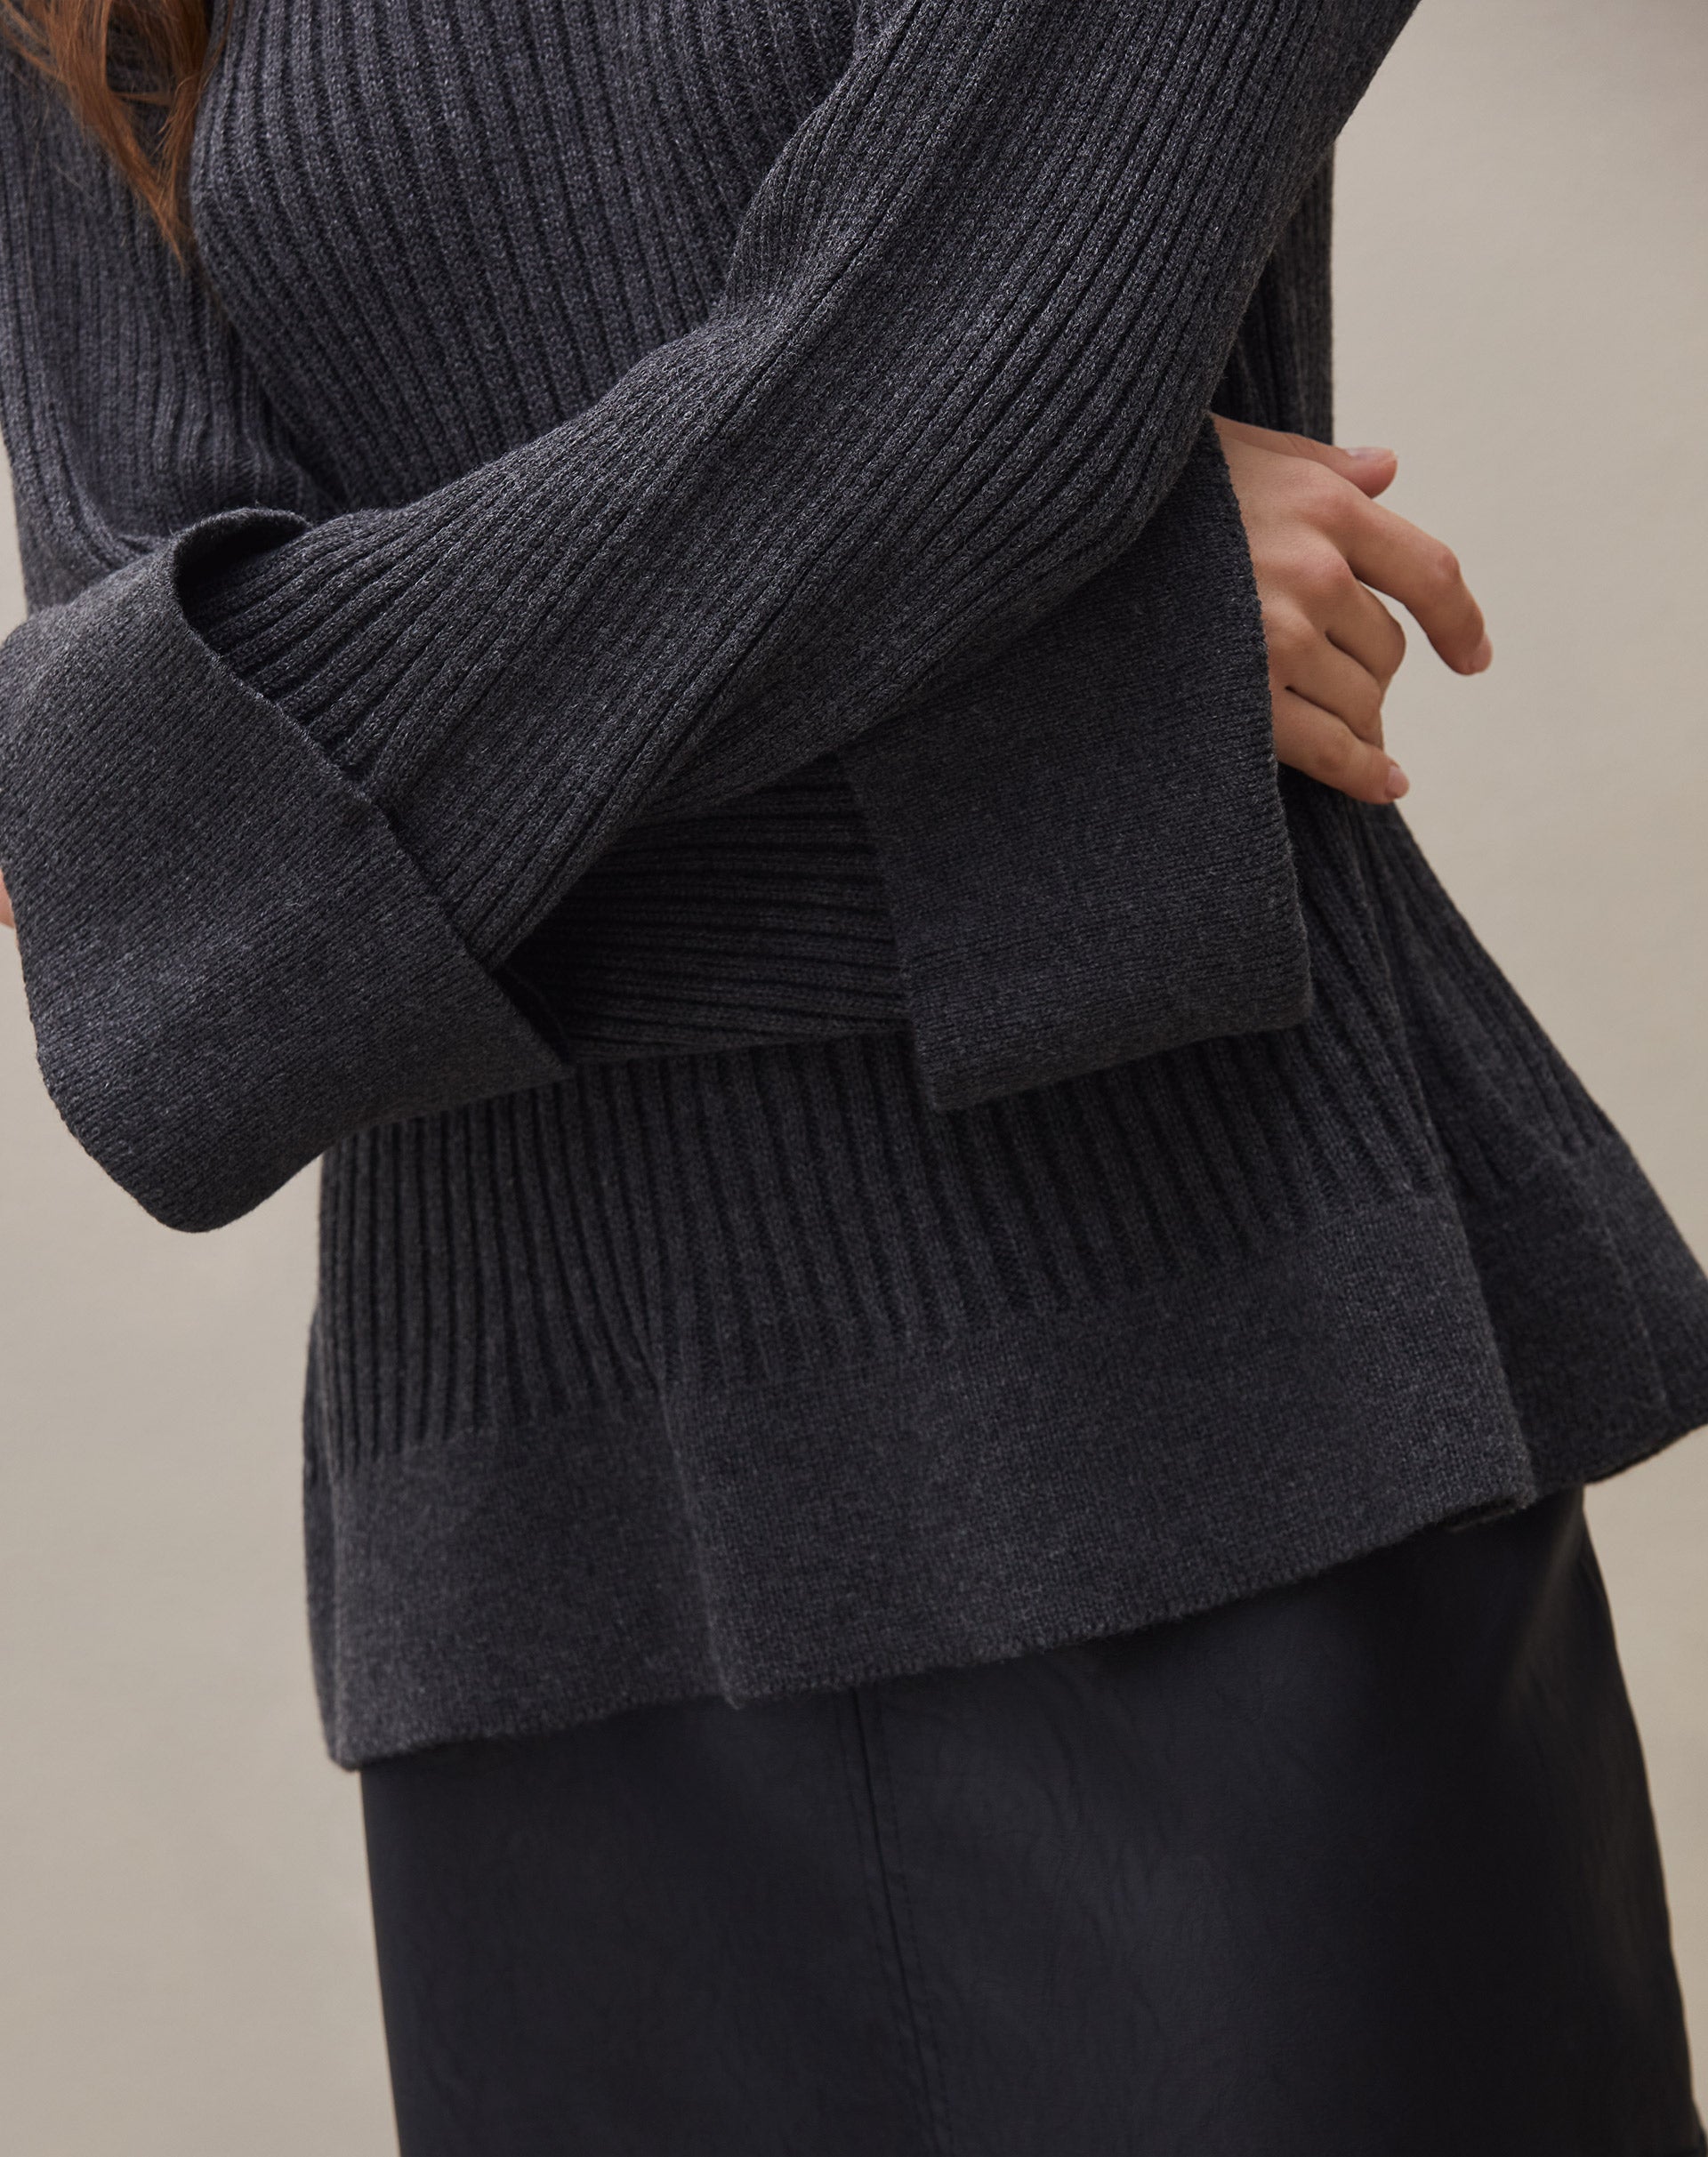 Suéter de Tricot Canelado com Punho Virado - Cinza Escuro